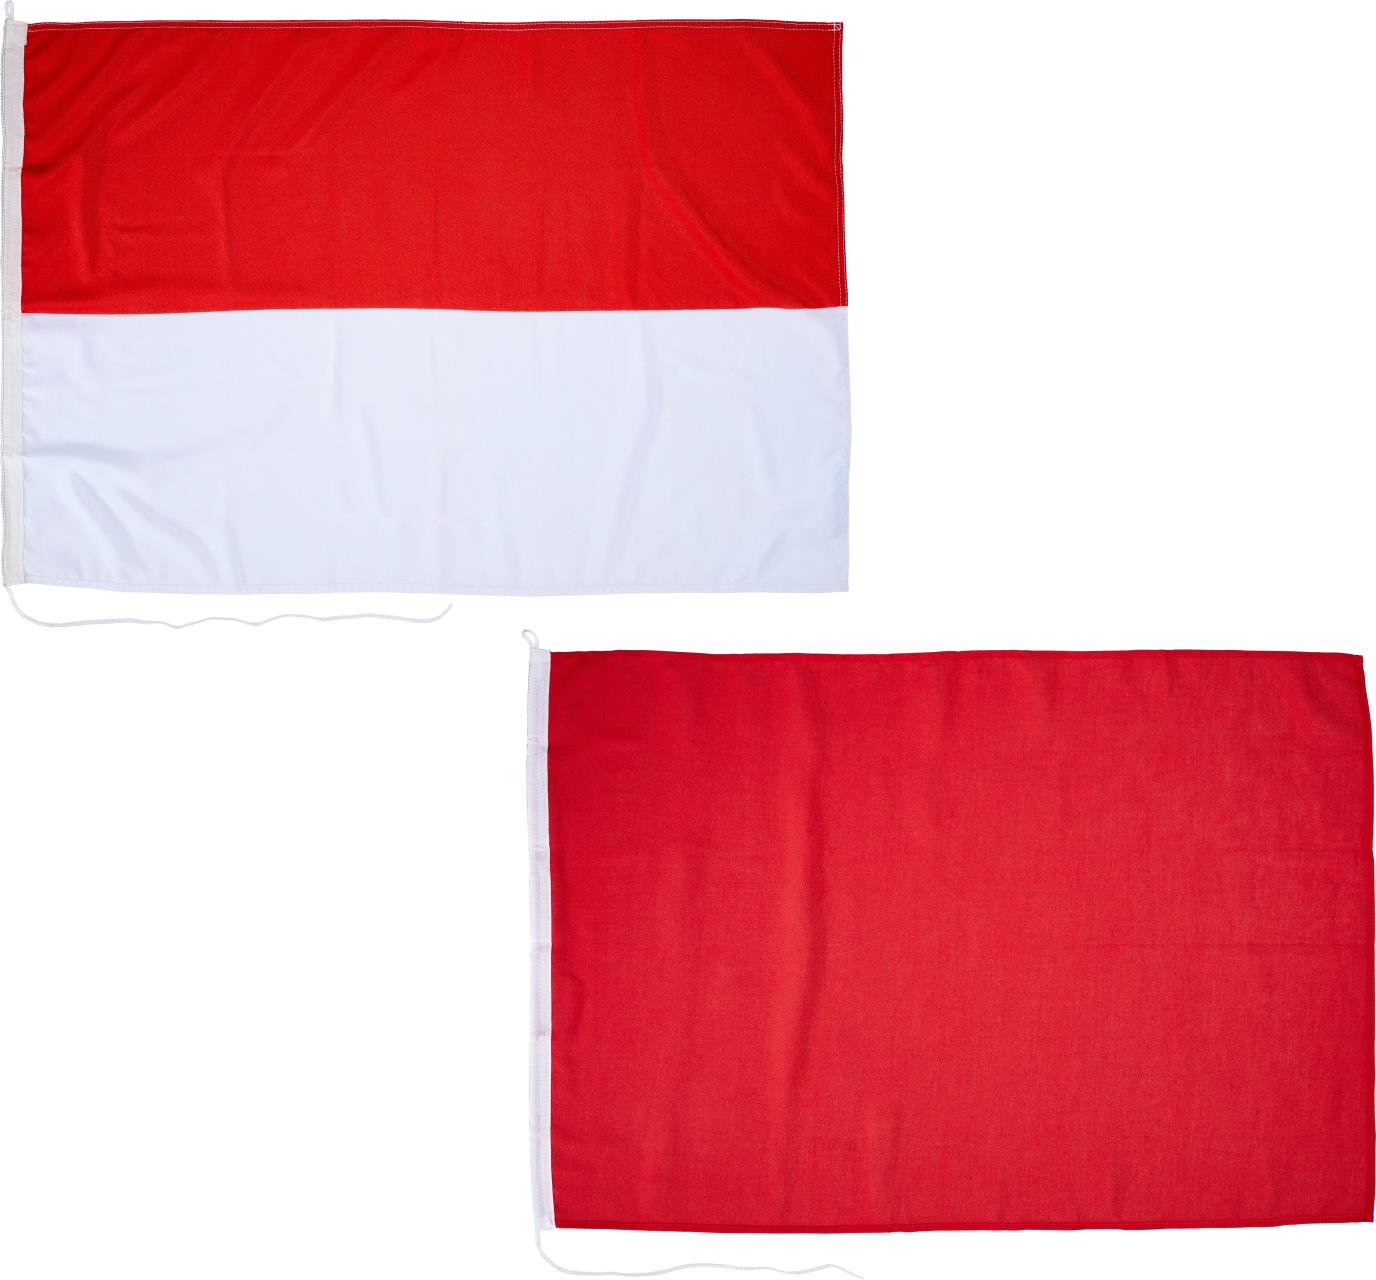 Bw Fluss Schiffsfahrts Flagge,rot/weiß,80x100cm,W.Hohenstein,Söhne,Duisburg